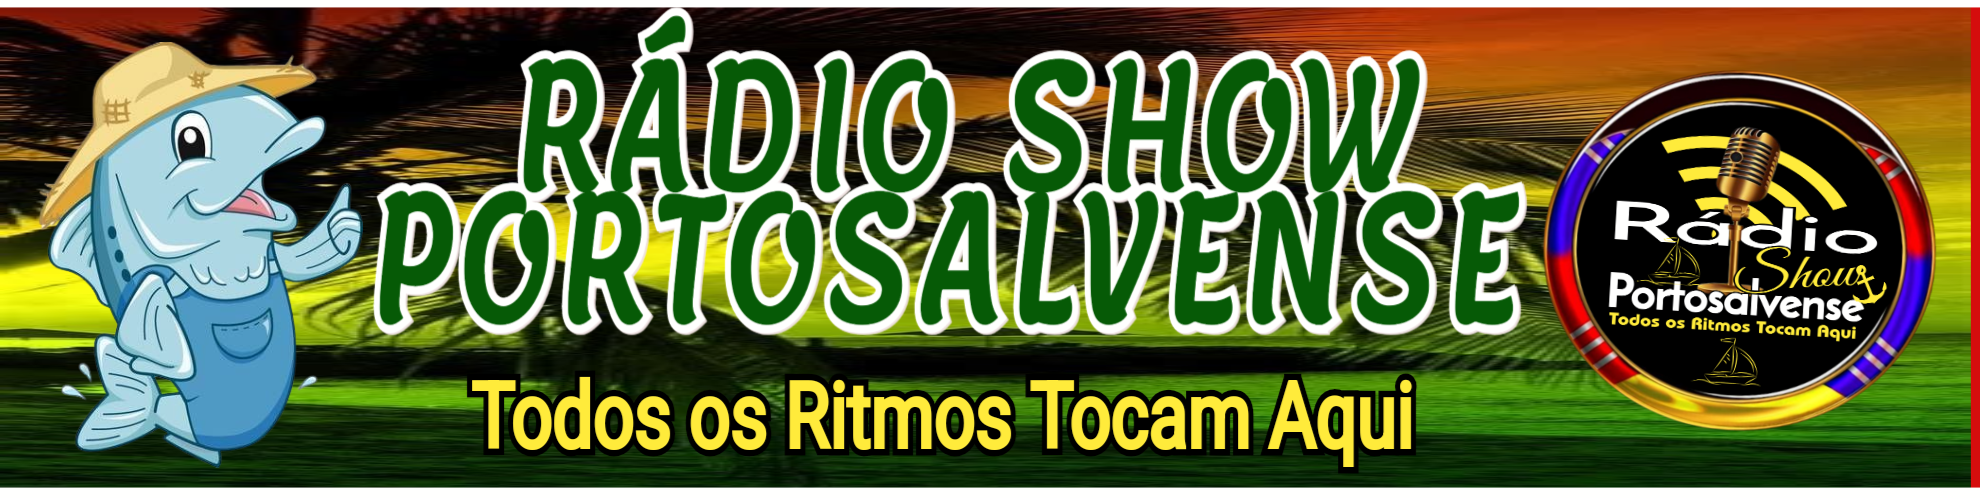 Rádio Show Portosalvense